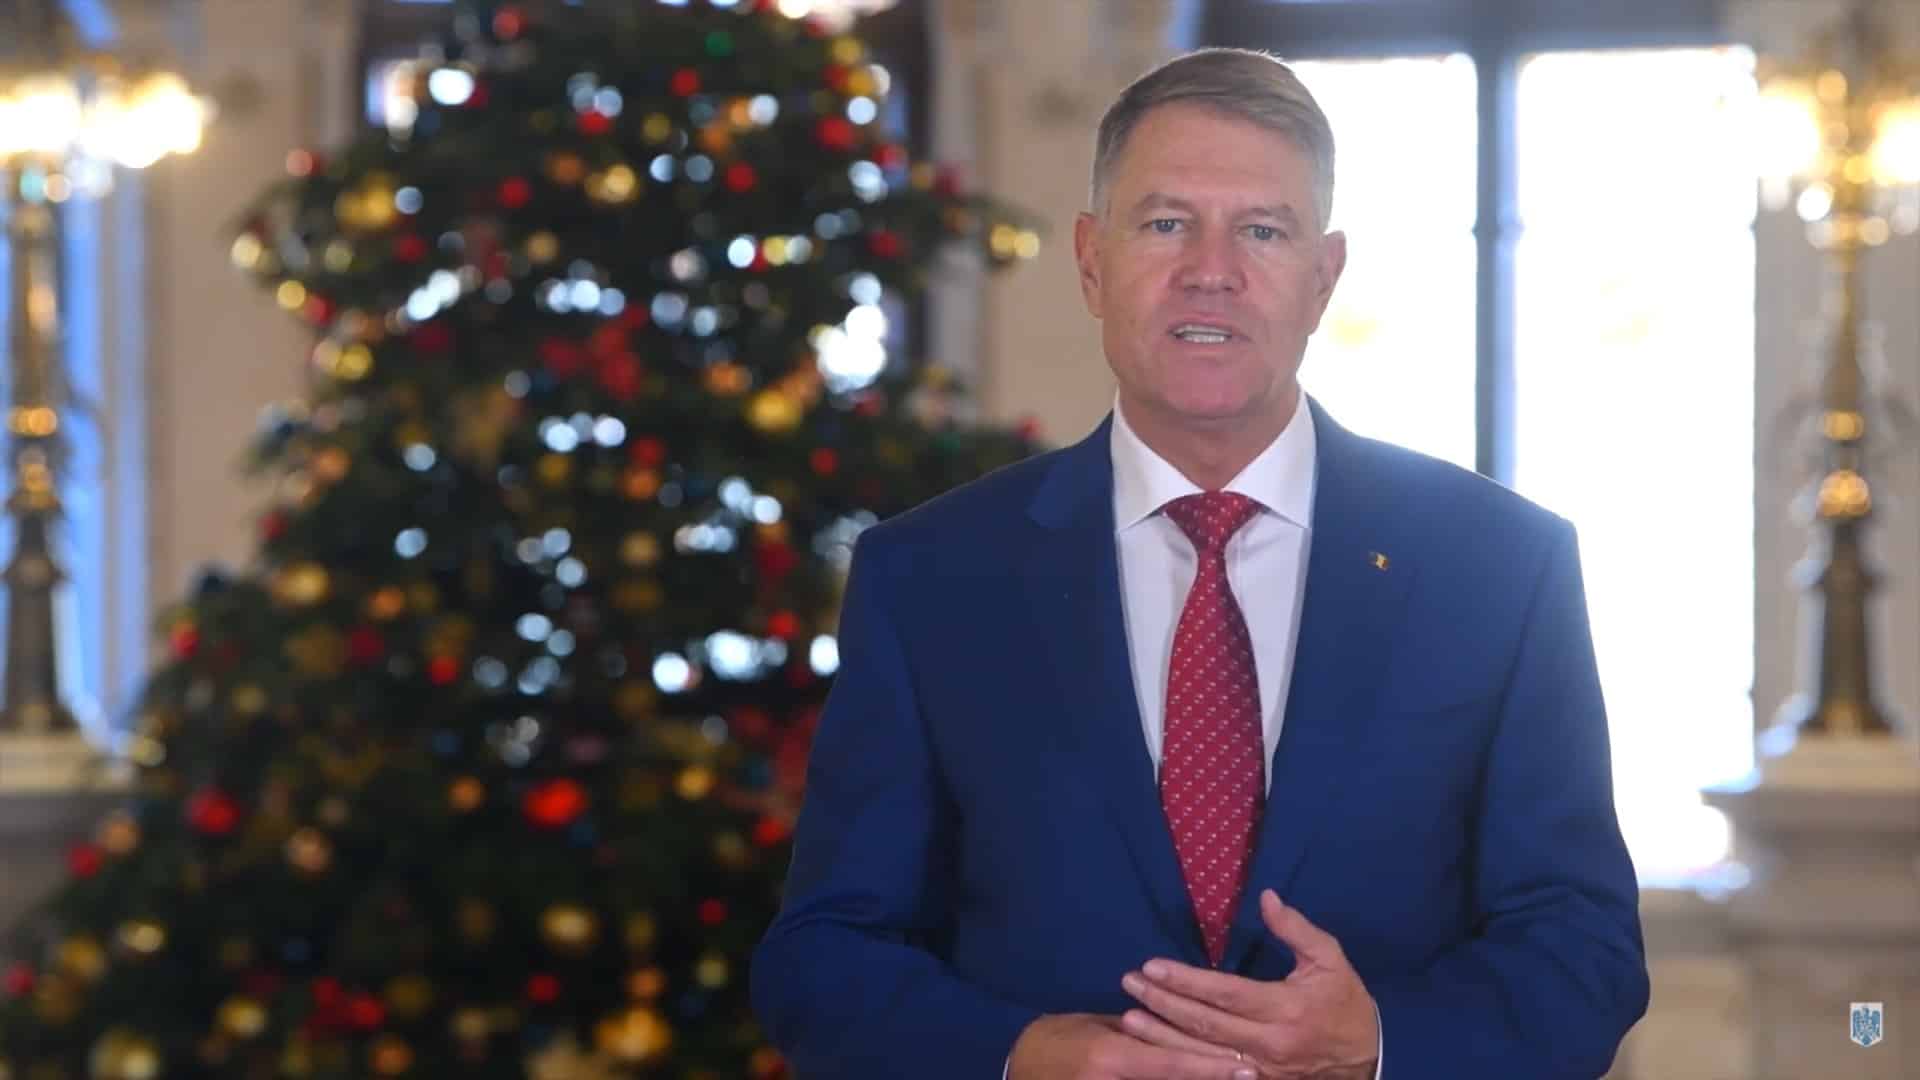 video mesajul preşedintelui iohannis de crăciun: "solidari vom trece cu bine peste această perioadă"